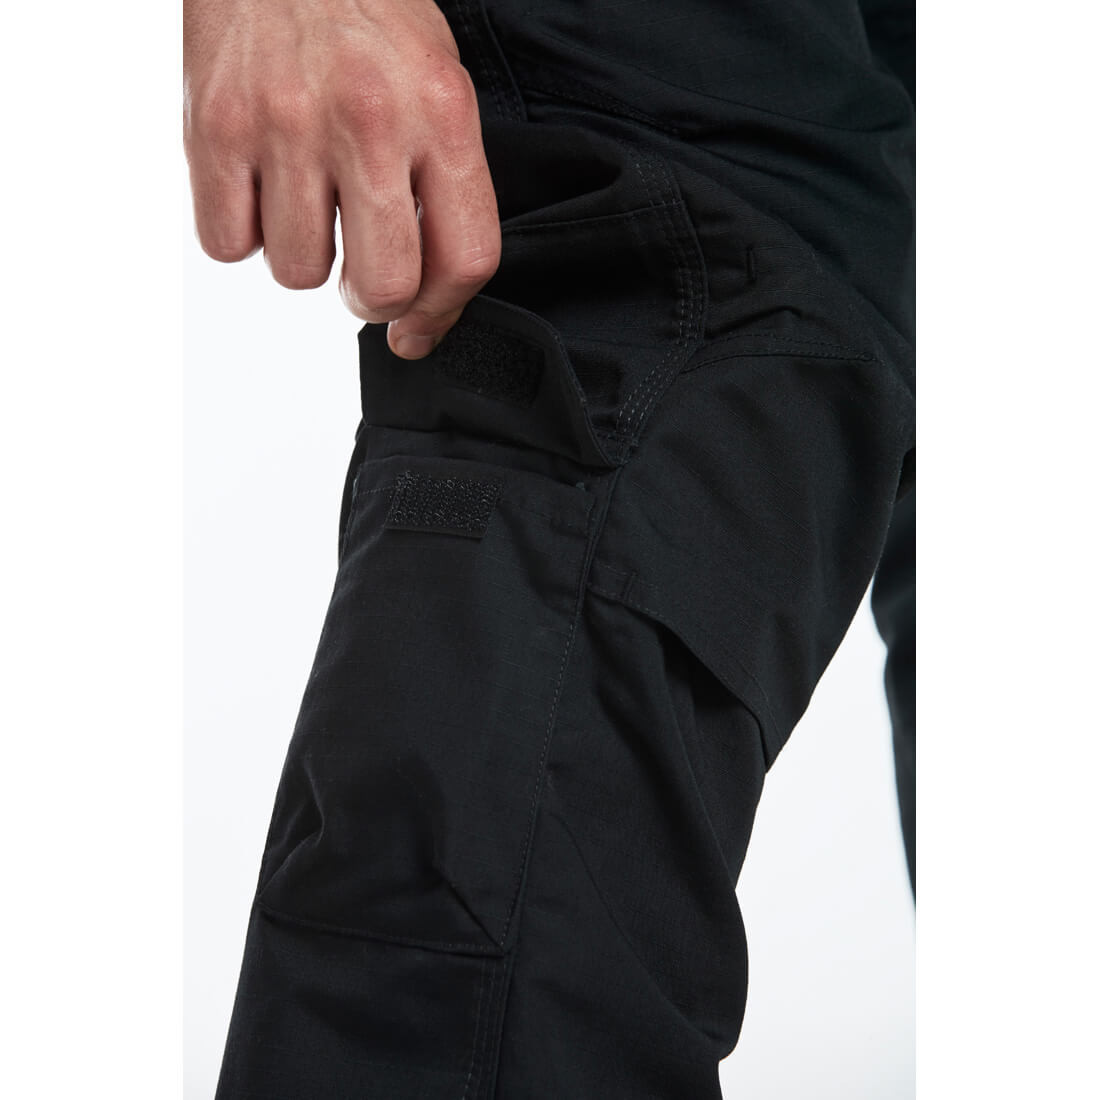 Pantalon KX3 Ripstop - Les vêtements de protection